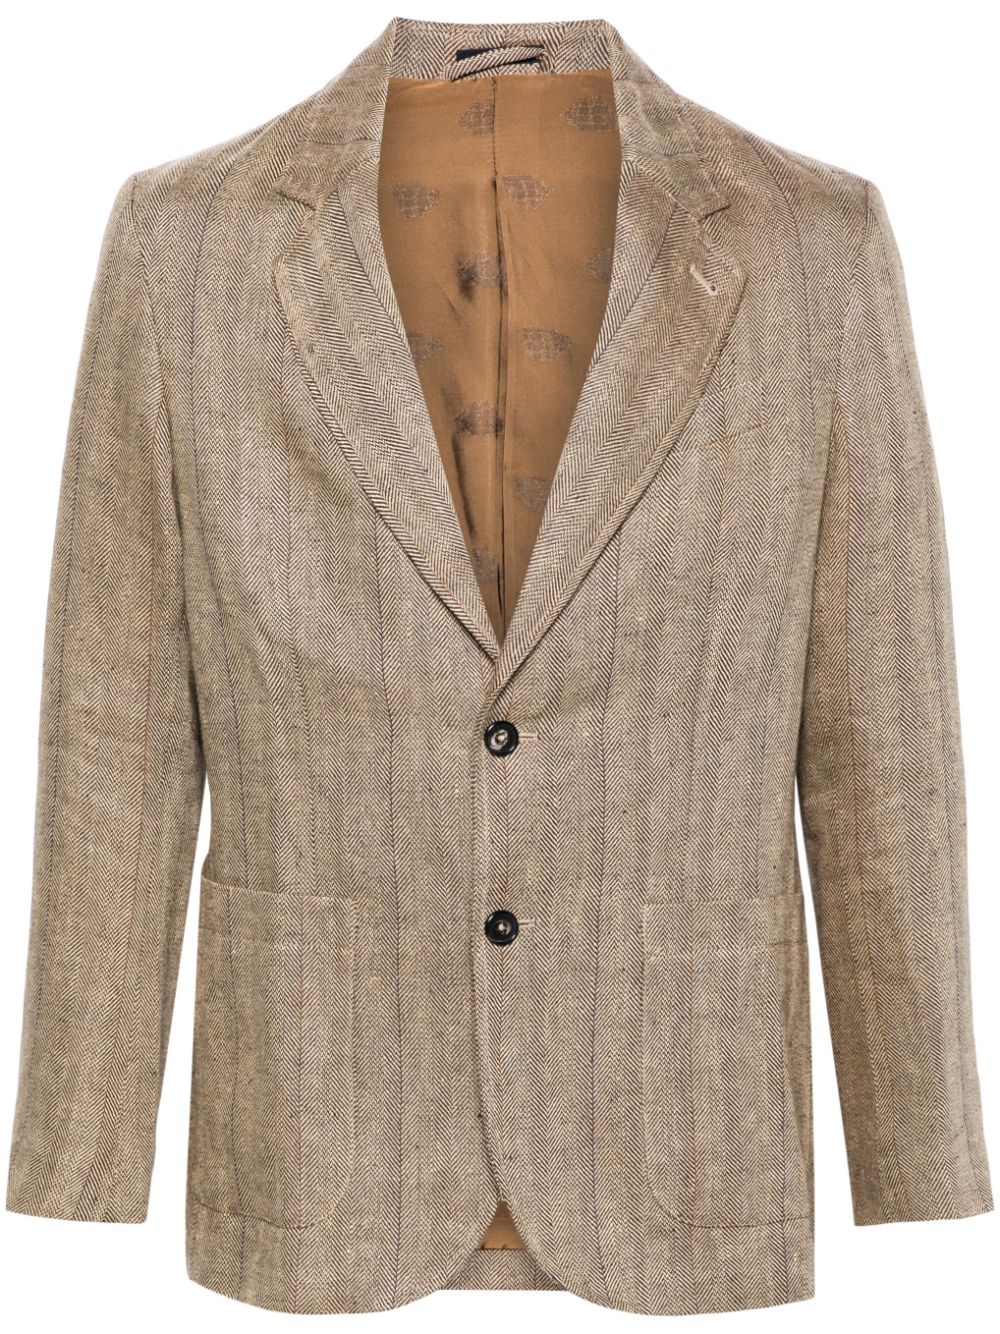 Image 1 of NOAH NY single-breasted linen blazer